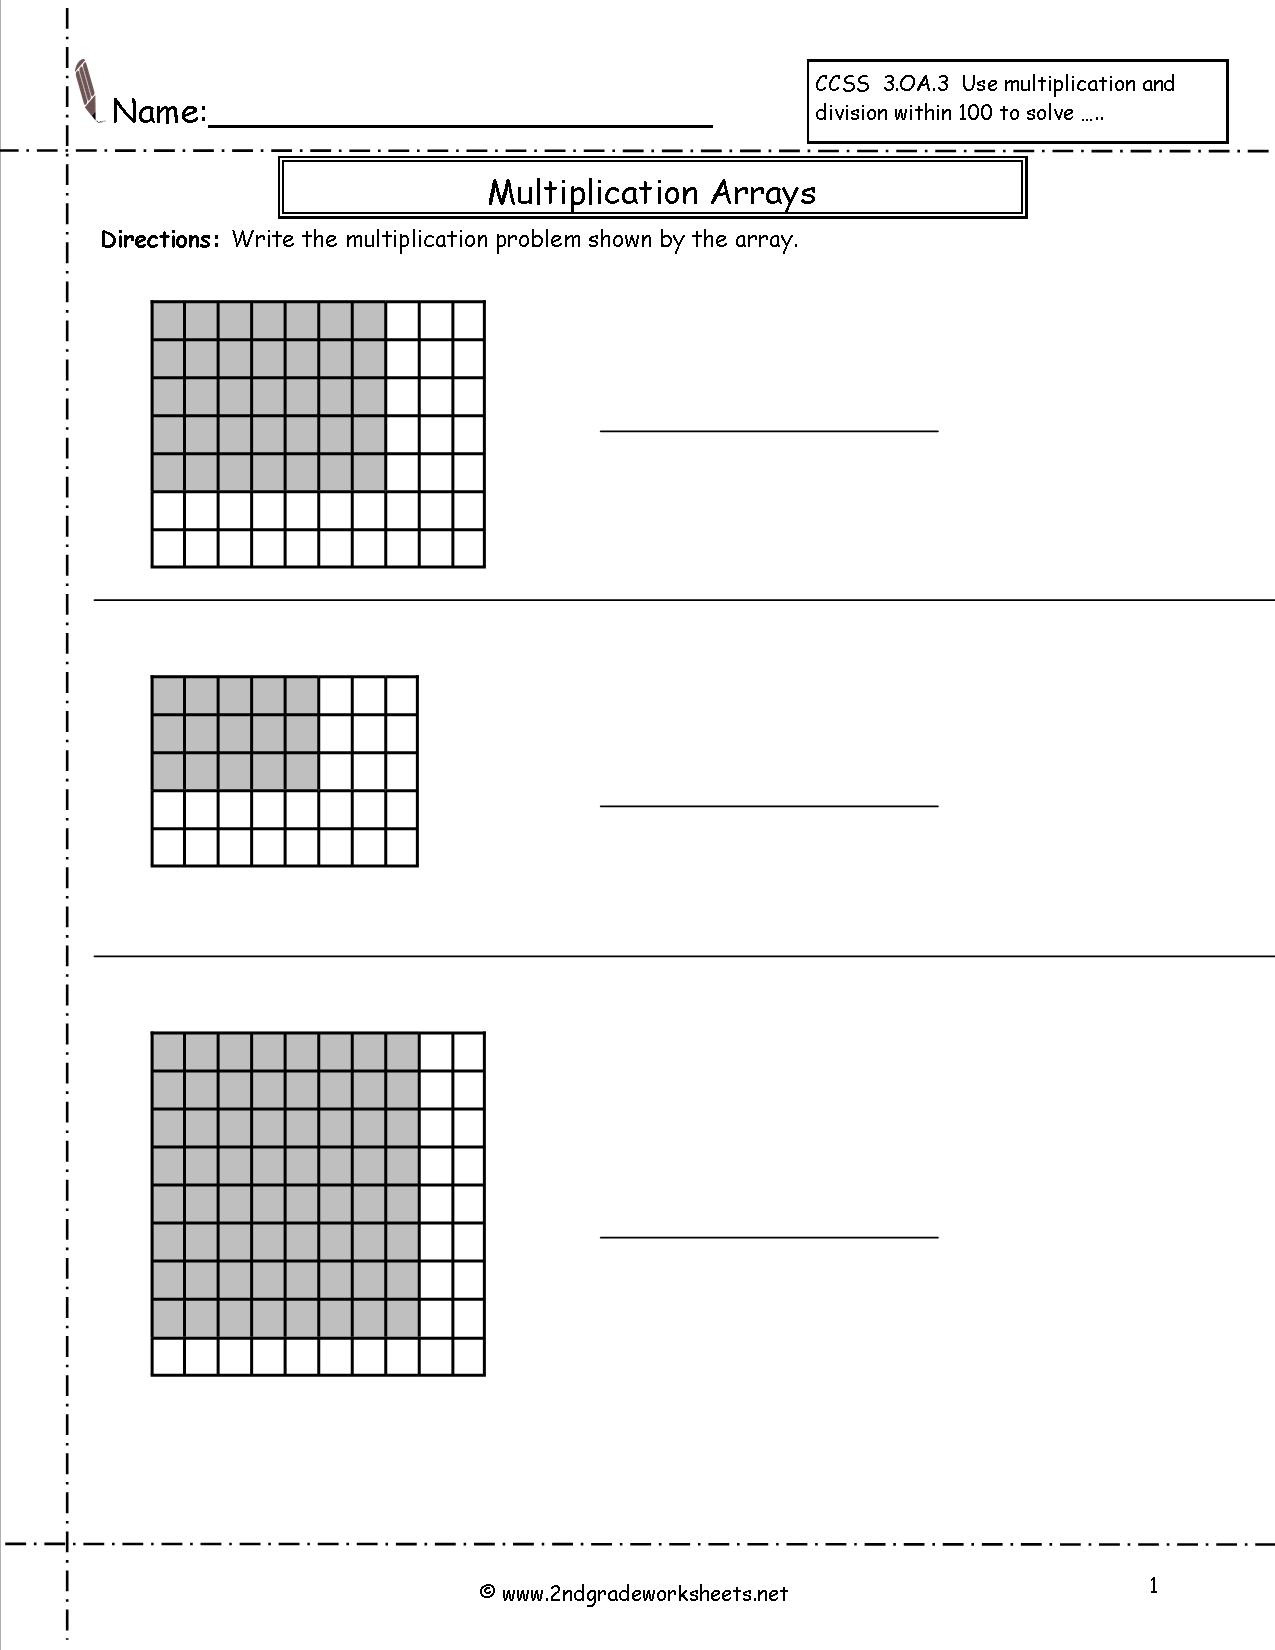 Multiplication Arrays Worksheets